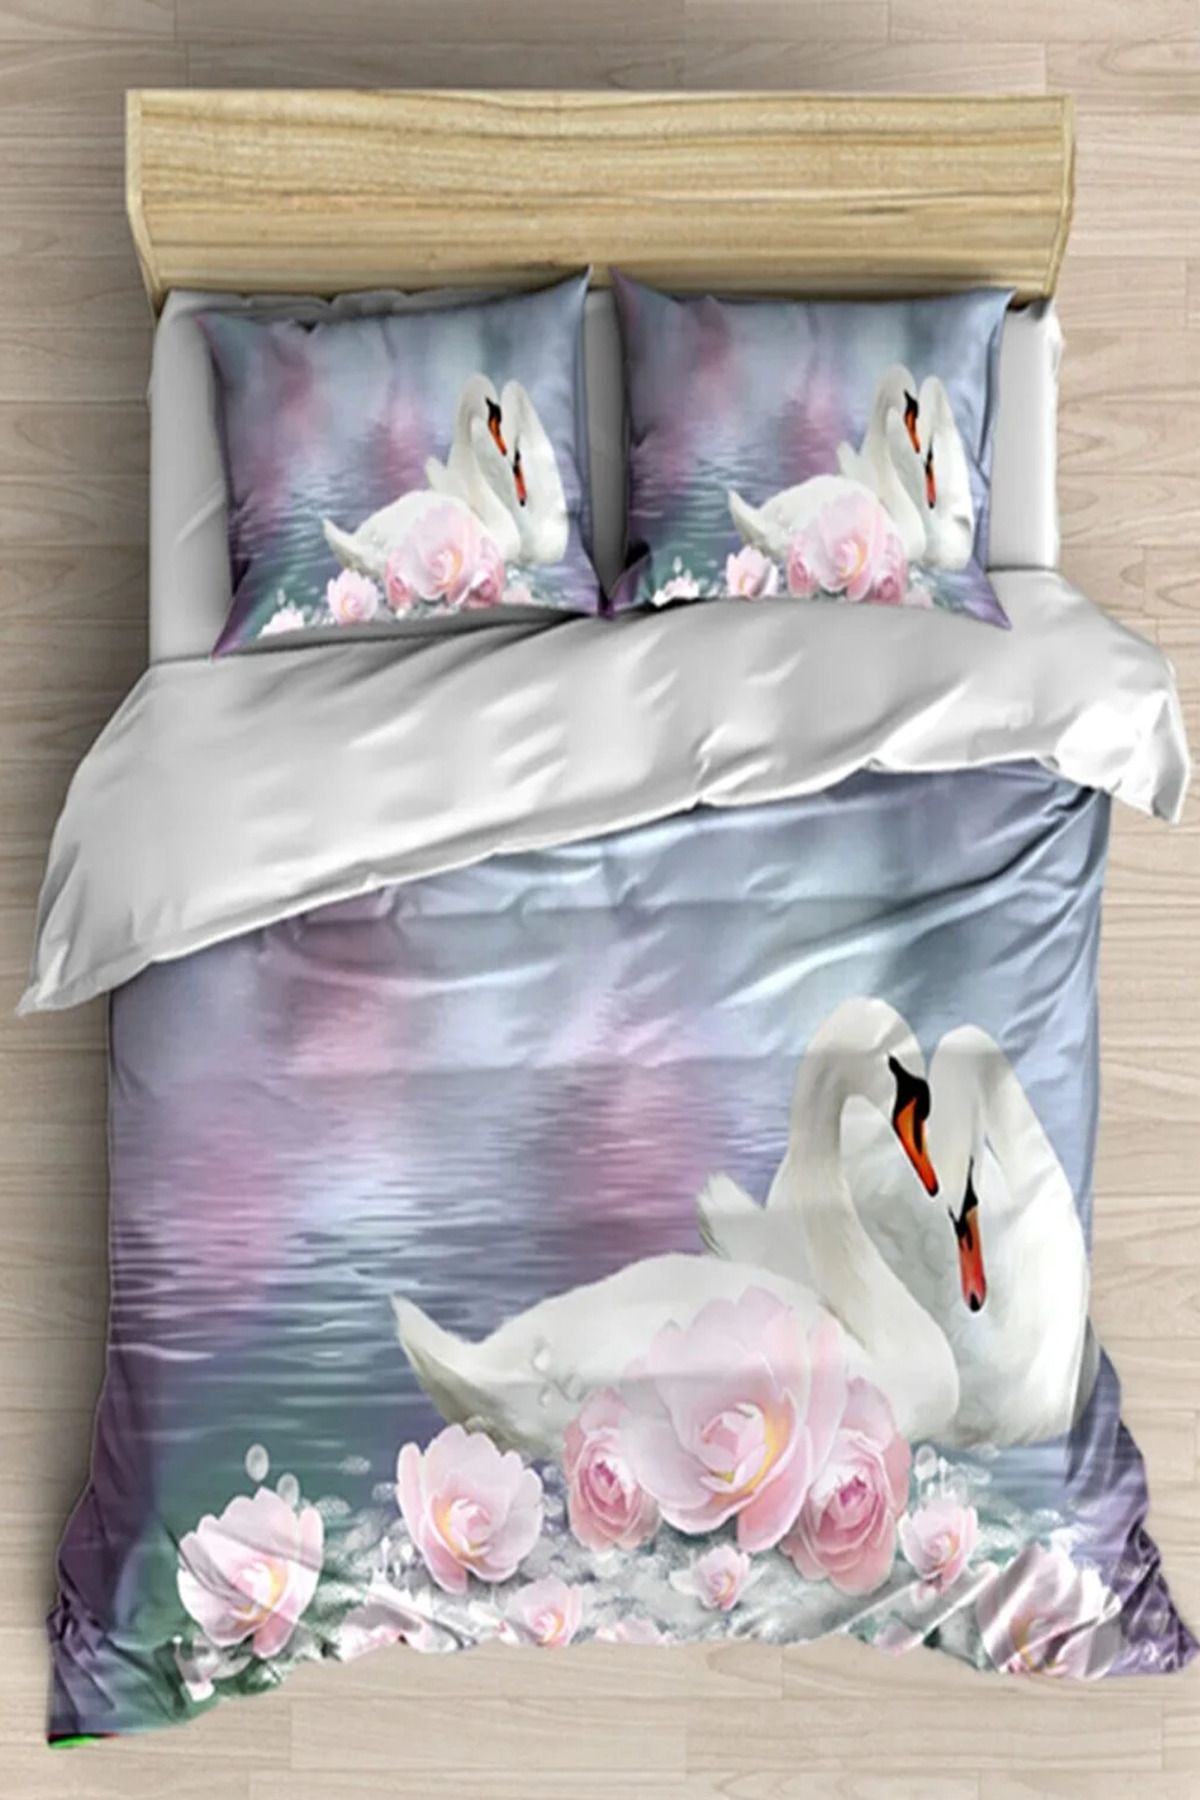 Else Halı Aşk Beyaz Kuğular Güller 3d Desenli Çift Kişilik Nevresim Takımı